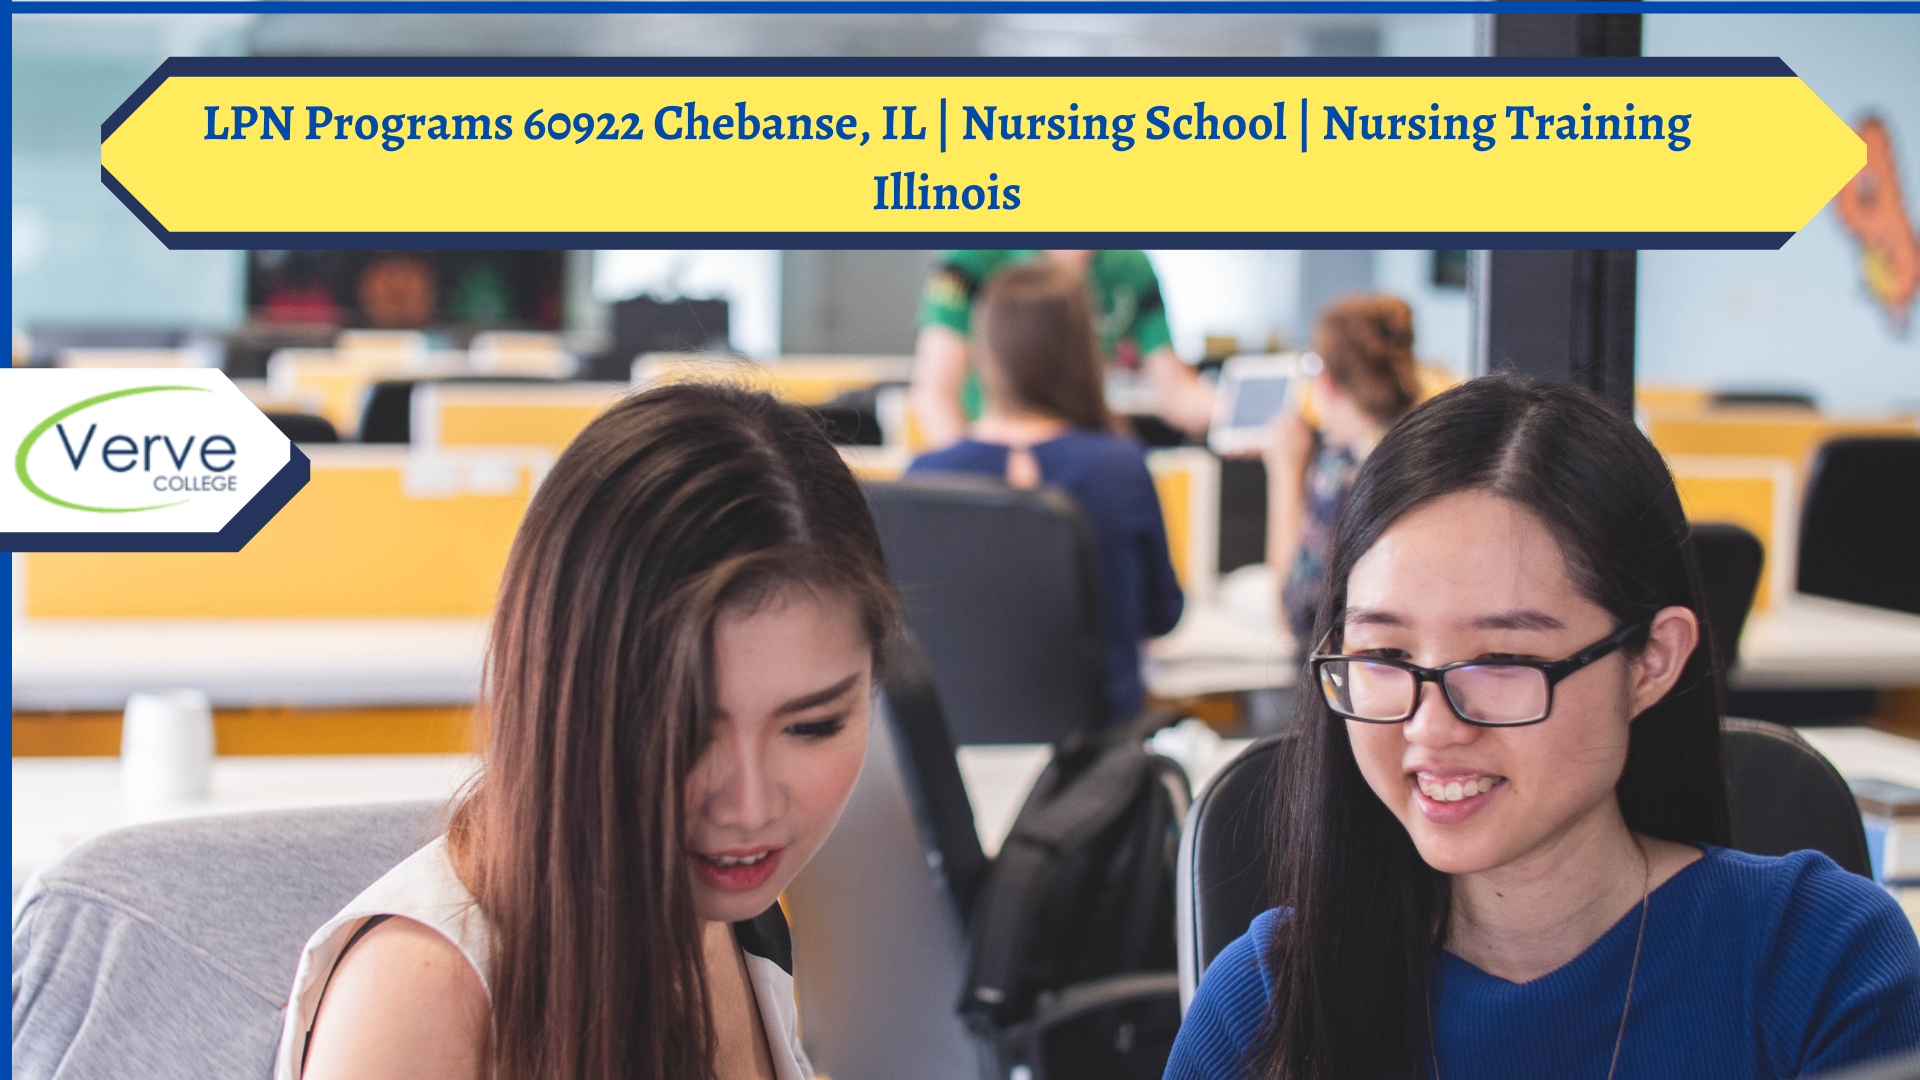 LPN Programs 60922 Chebanse, IL | Nursing School | Nursing Training Illinois